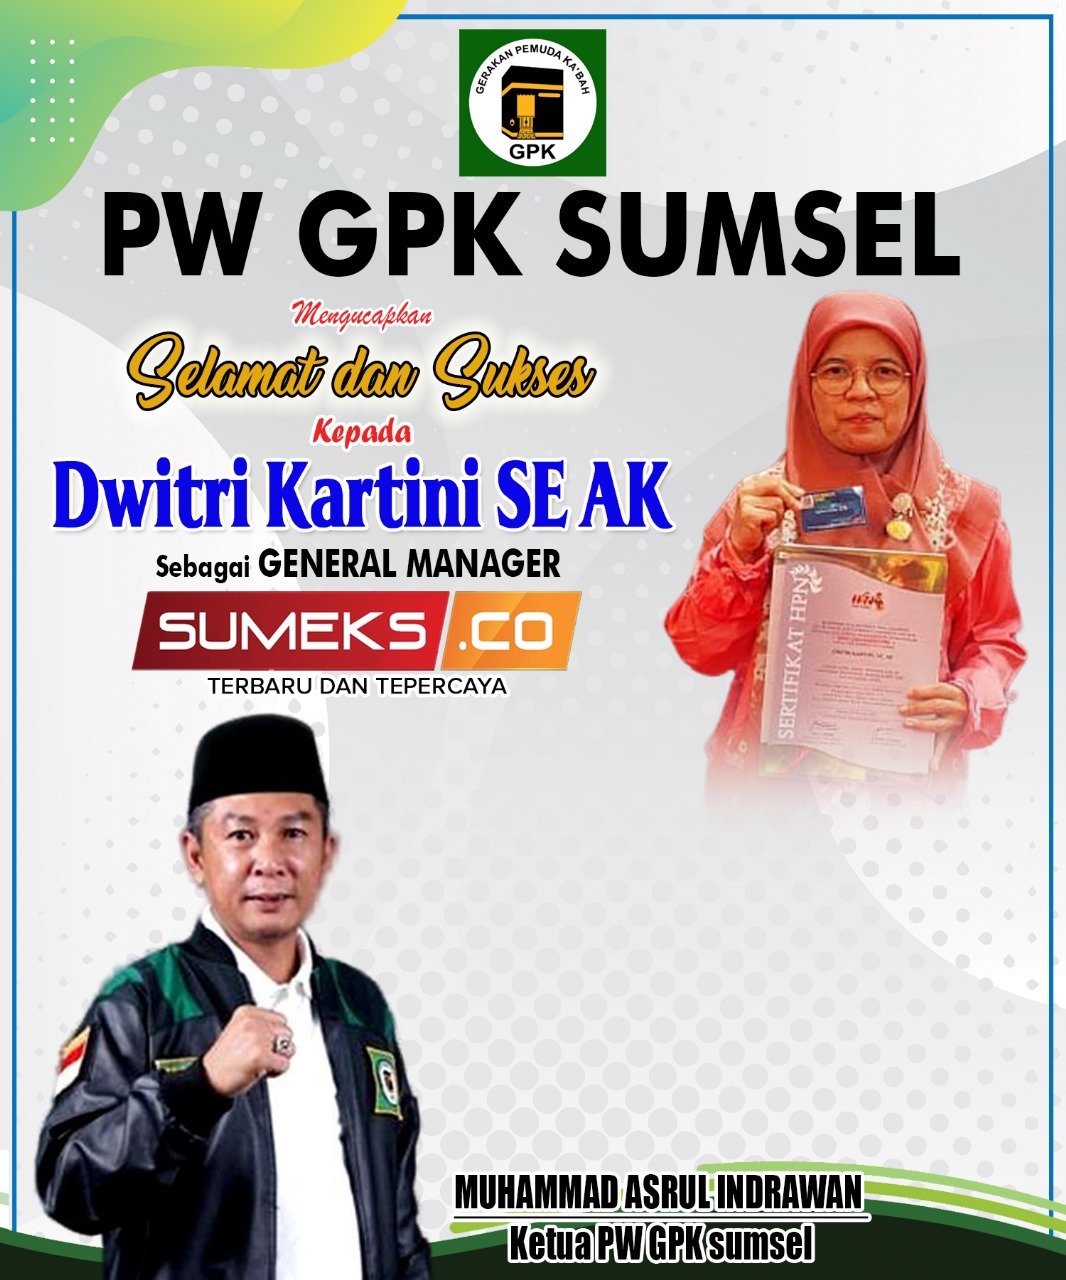 PW GPK Sumsel Mengucapkan Selamat dan Sukses Kepada Dwitri Kartini General Manager SUMEKS.CO